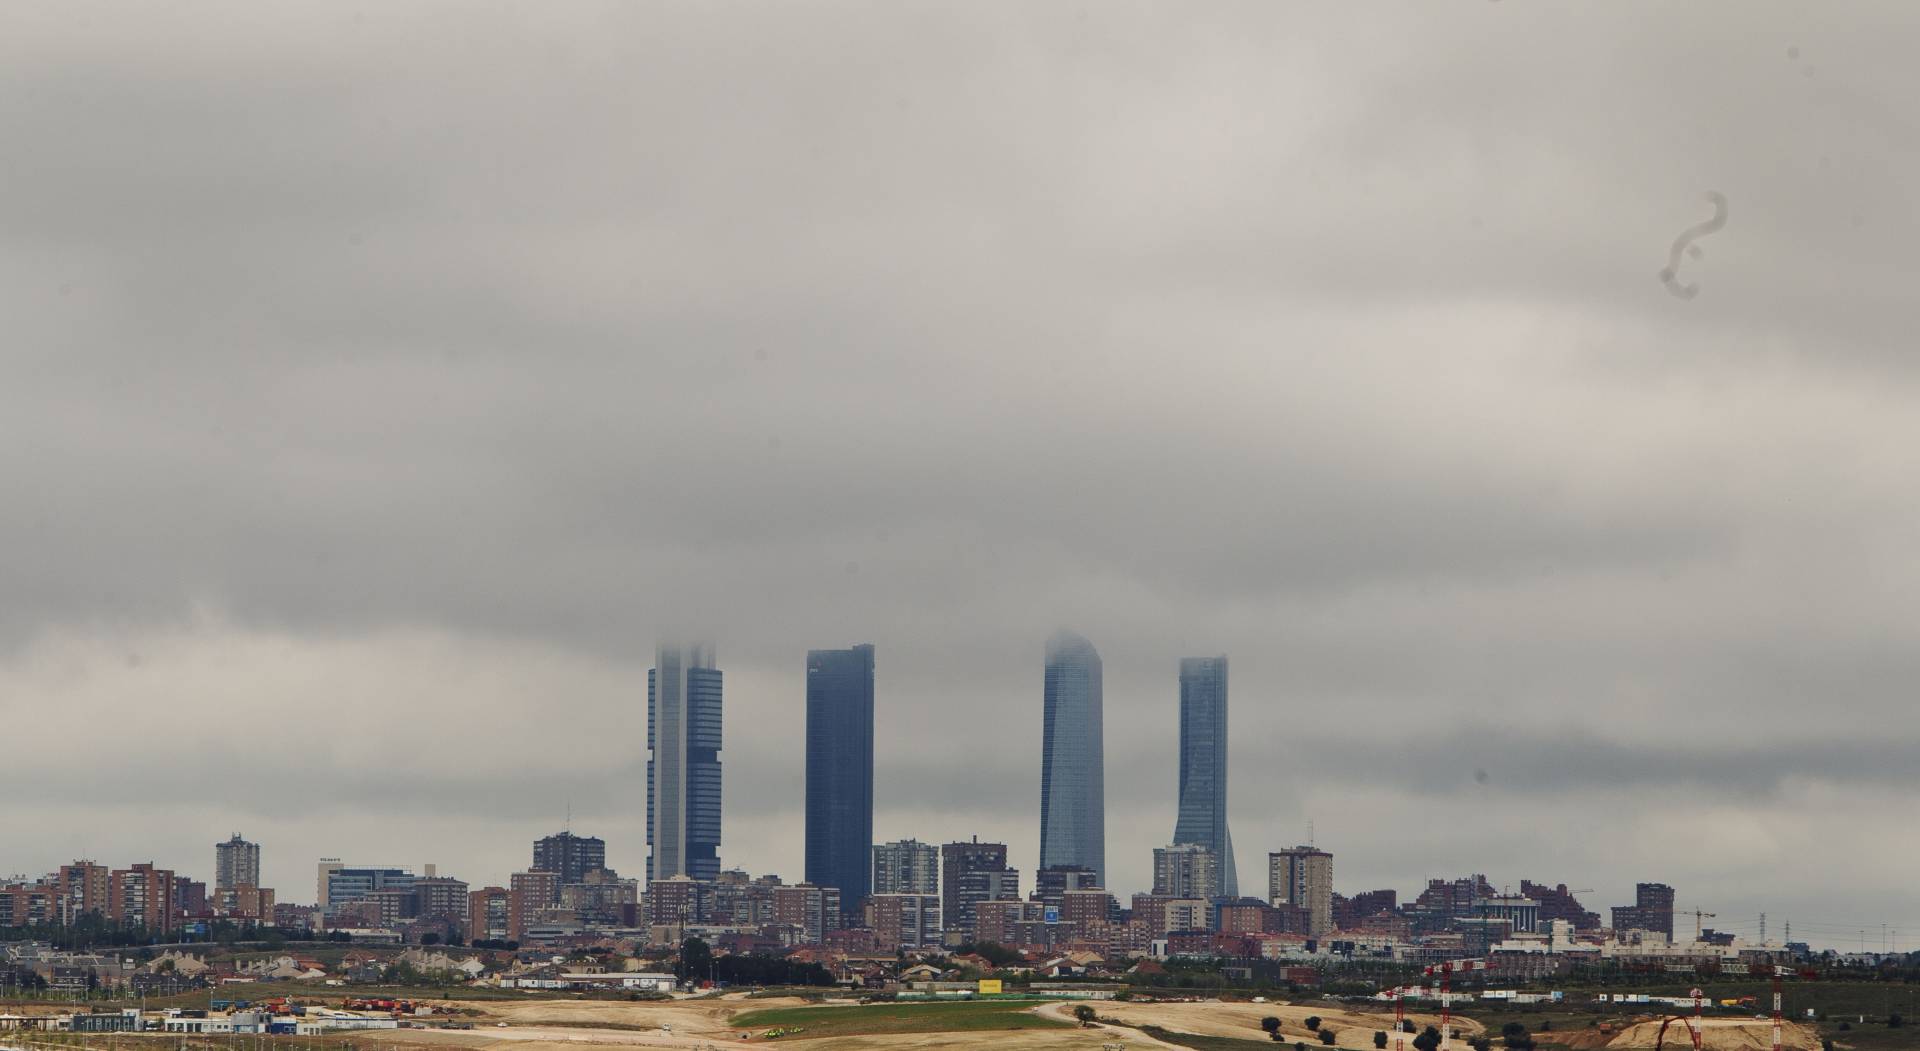 Las cuatro torres de Madrid rodeadas de viviendas. Imagen de 2012.